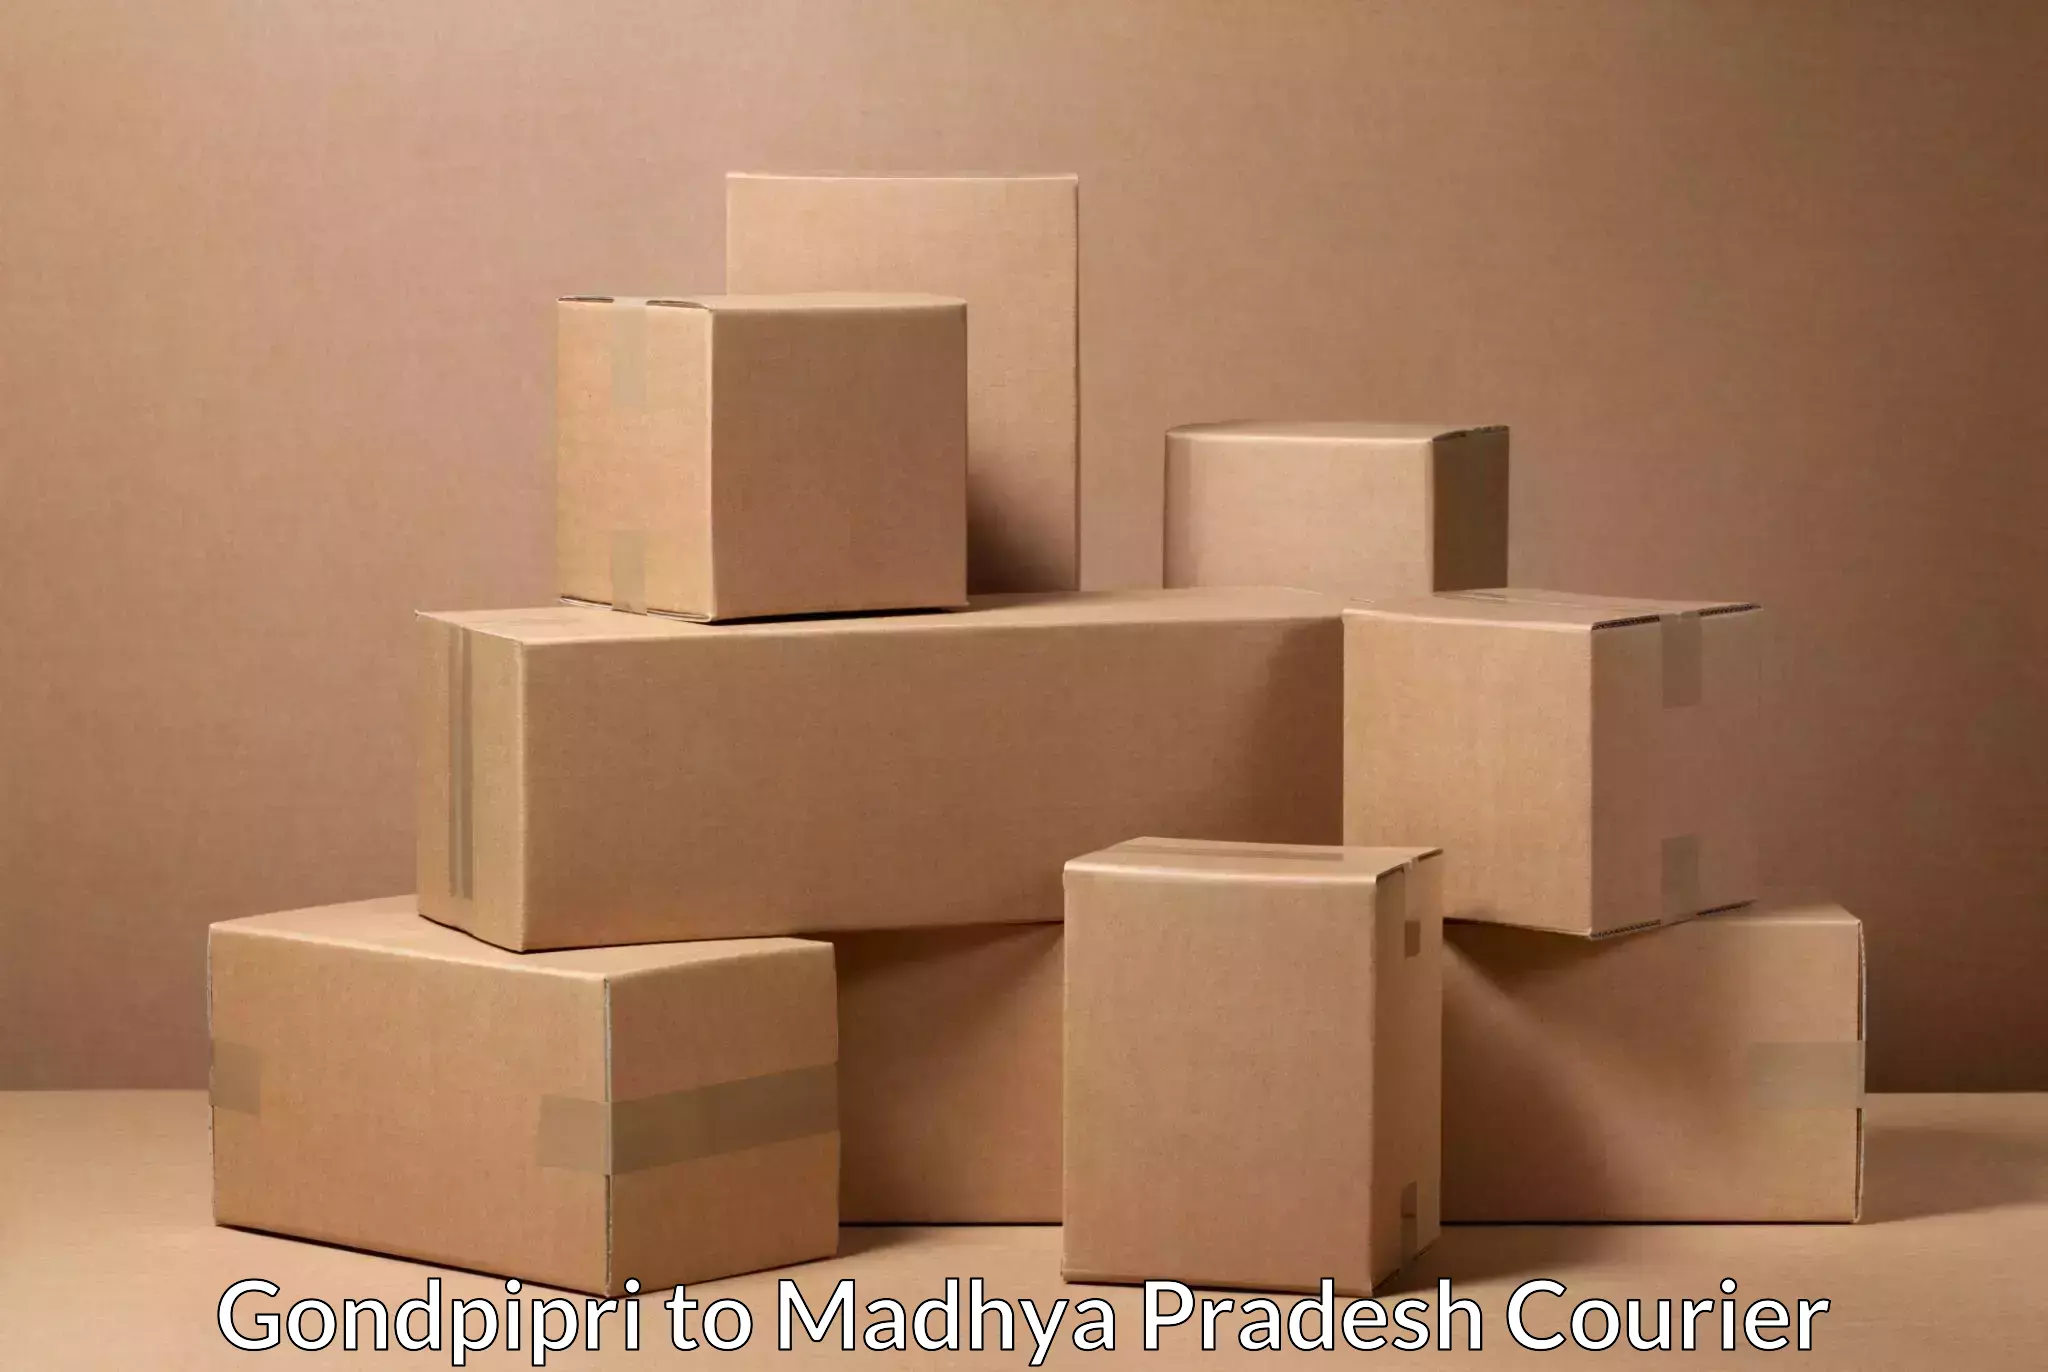 Nationwide shipping capabilities Gondpipri to Madhya Pradesh